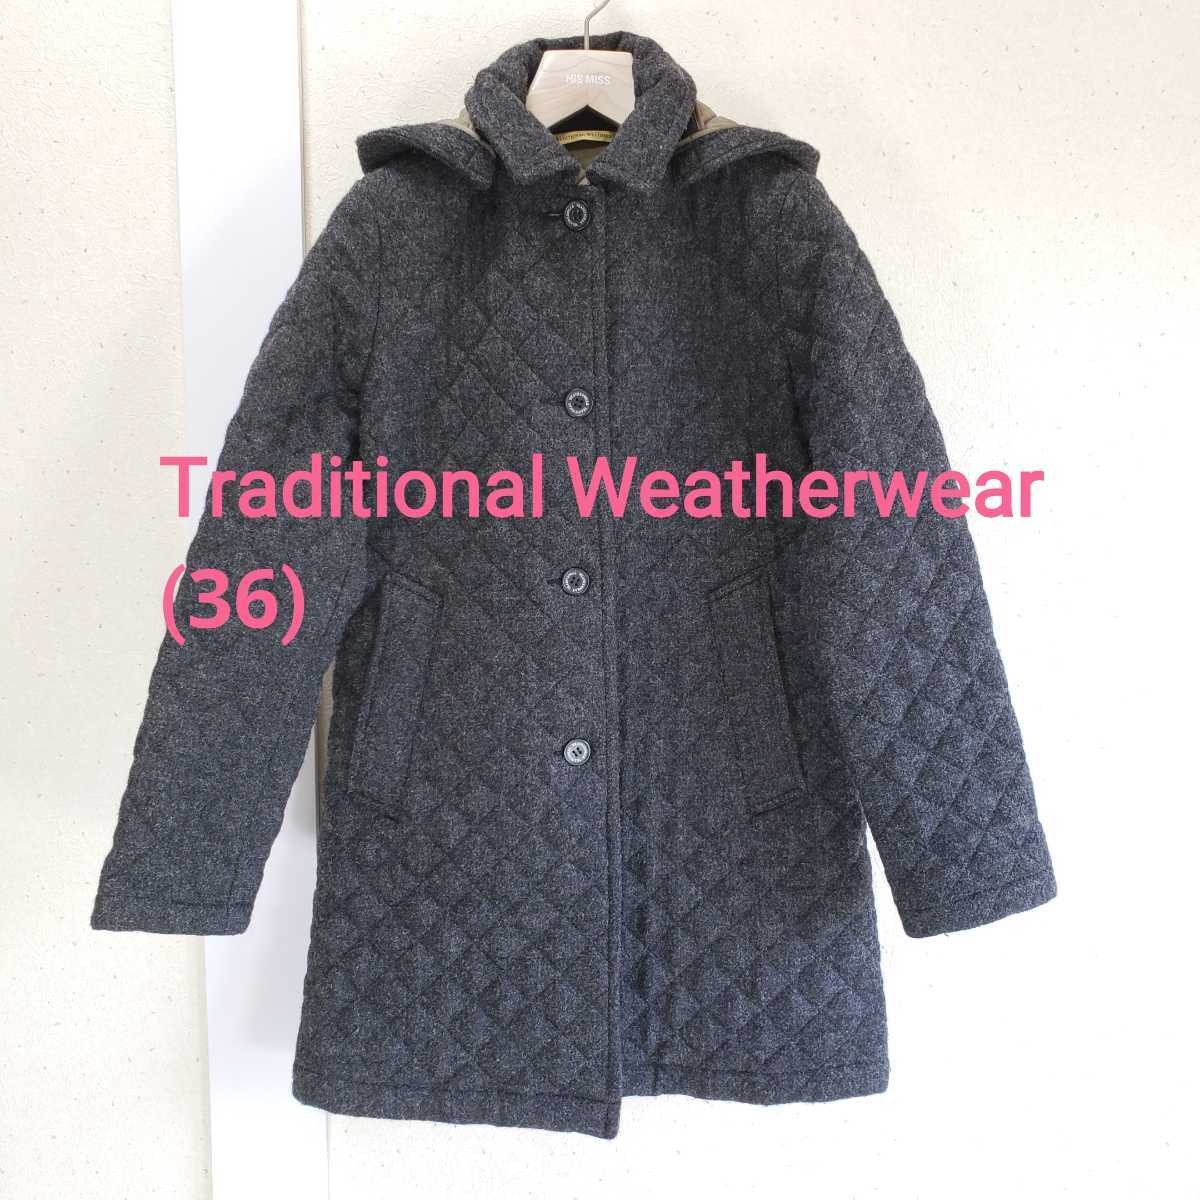 美品◆Traditional Weatherwear トラディショナルウェザーウェア フード付 中綿/ツイード/ウール生地  キルティングコート(36)ダークグレー